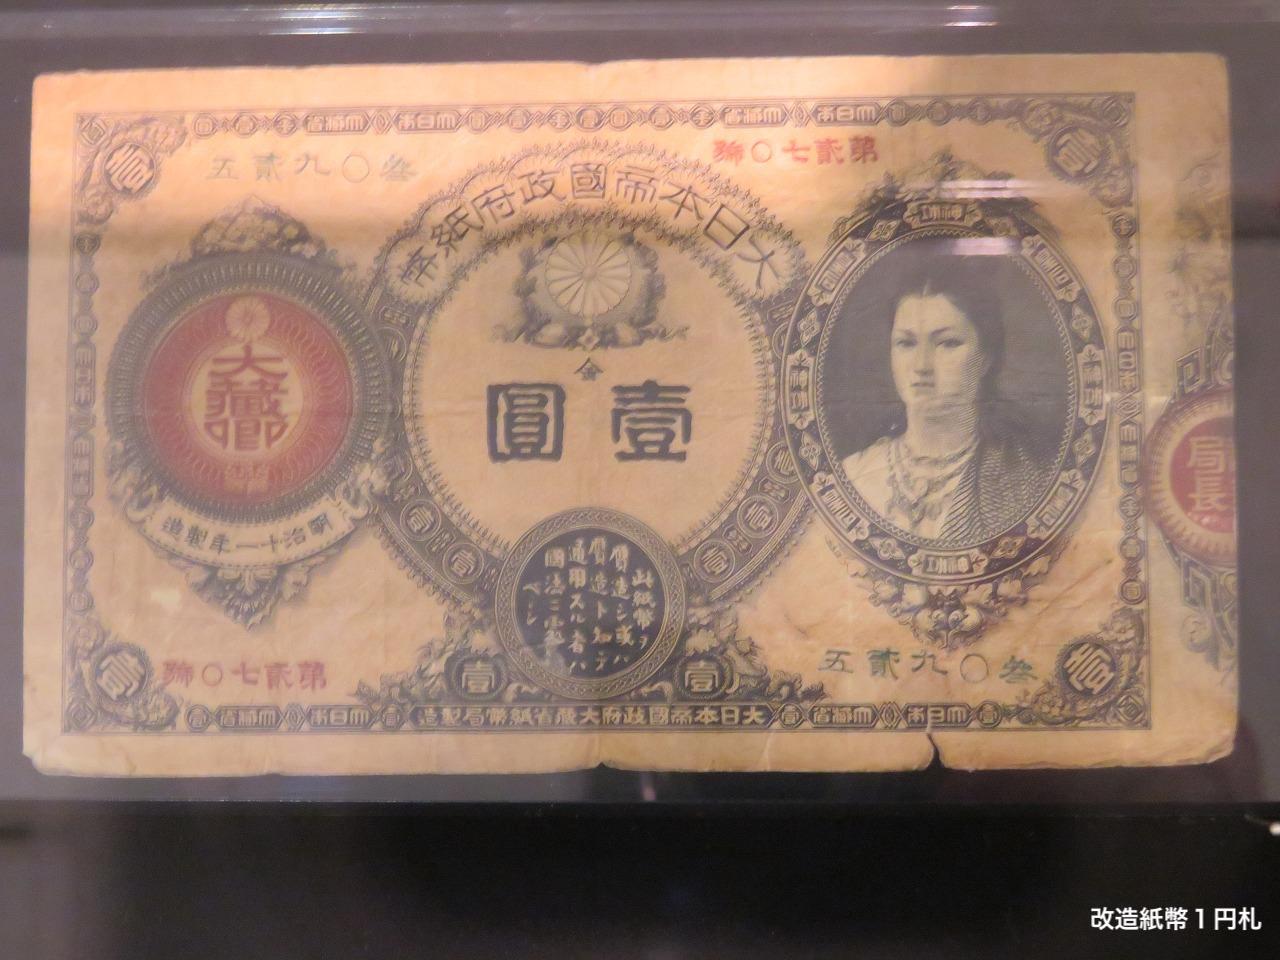 改造紙幣1円札 | MEQQE（めっけ）